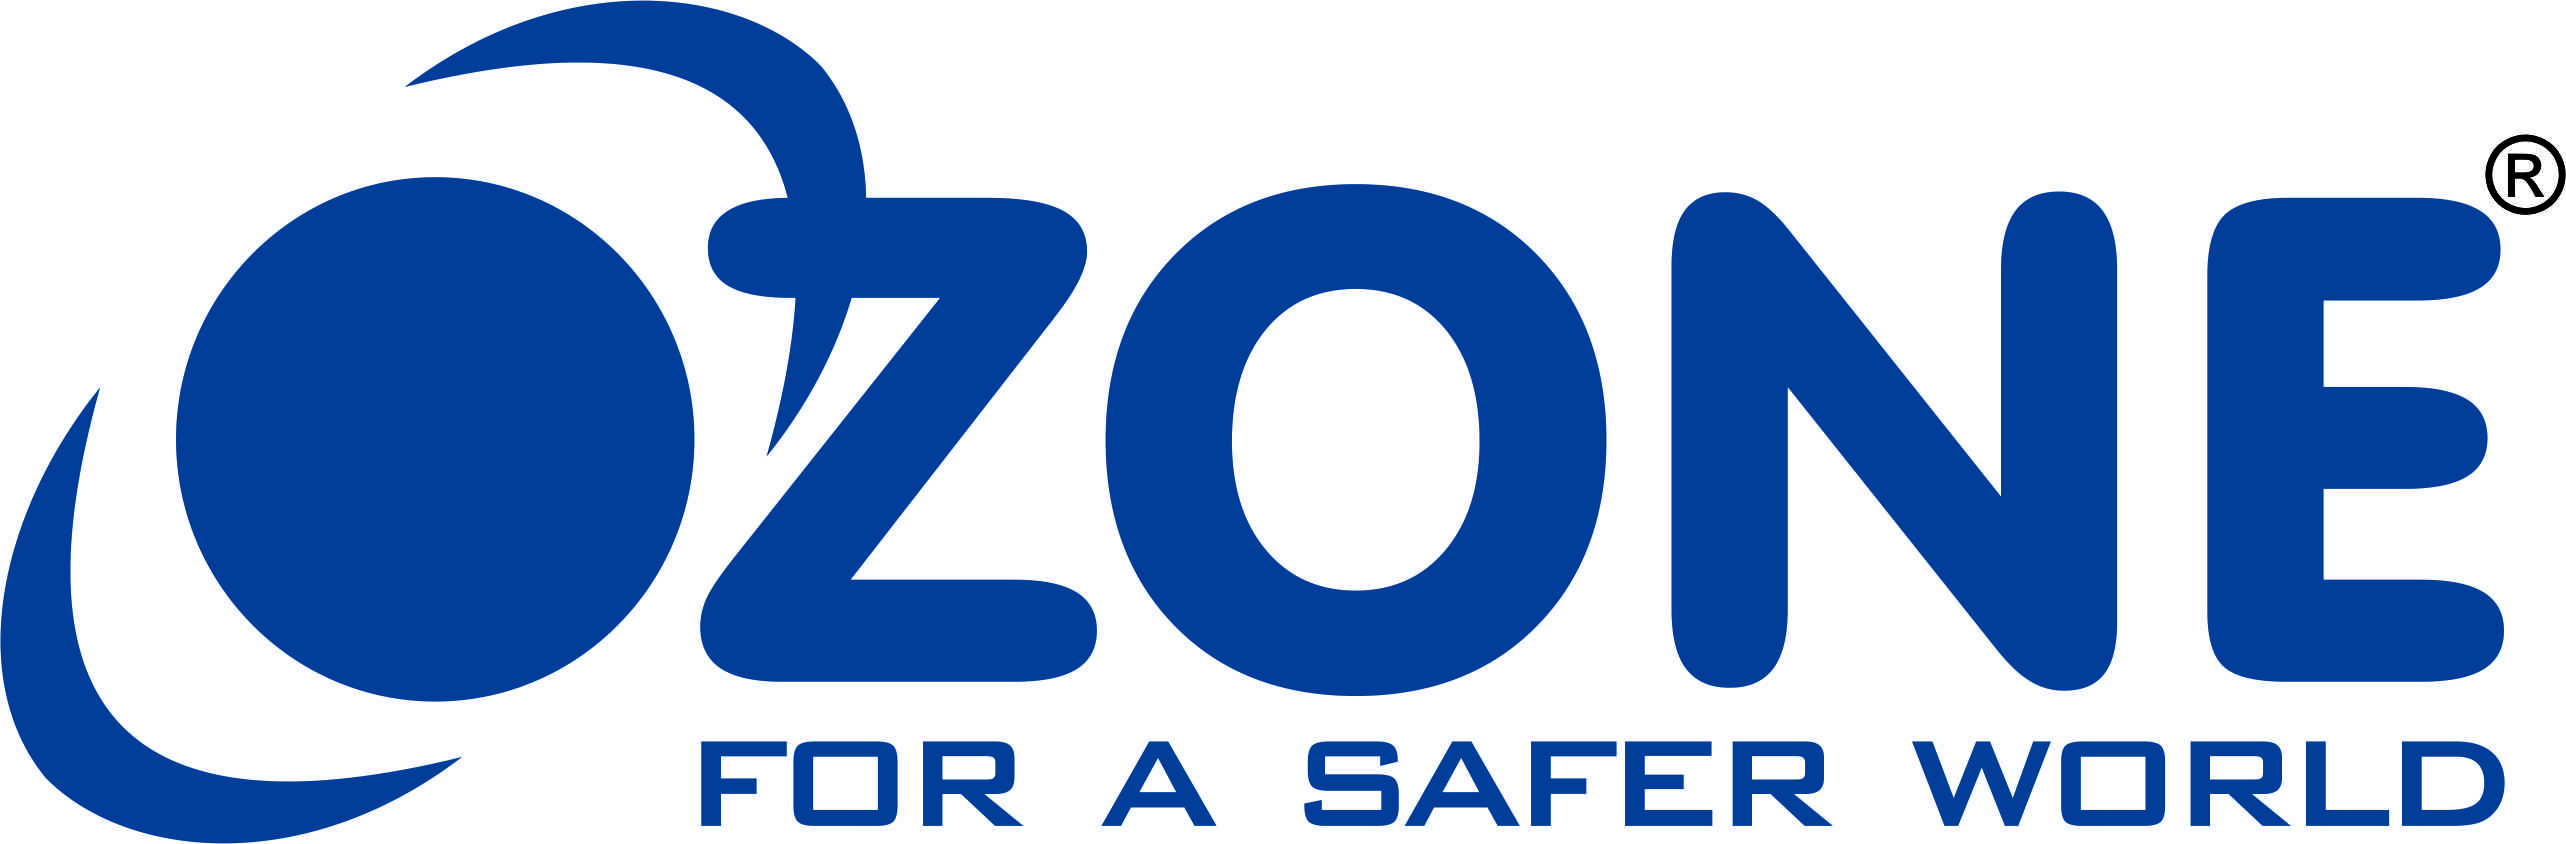 OZON экспресс лого